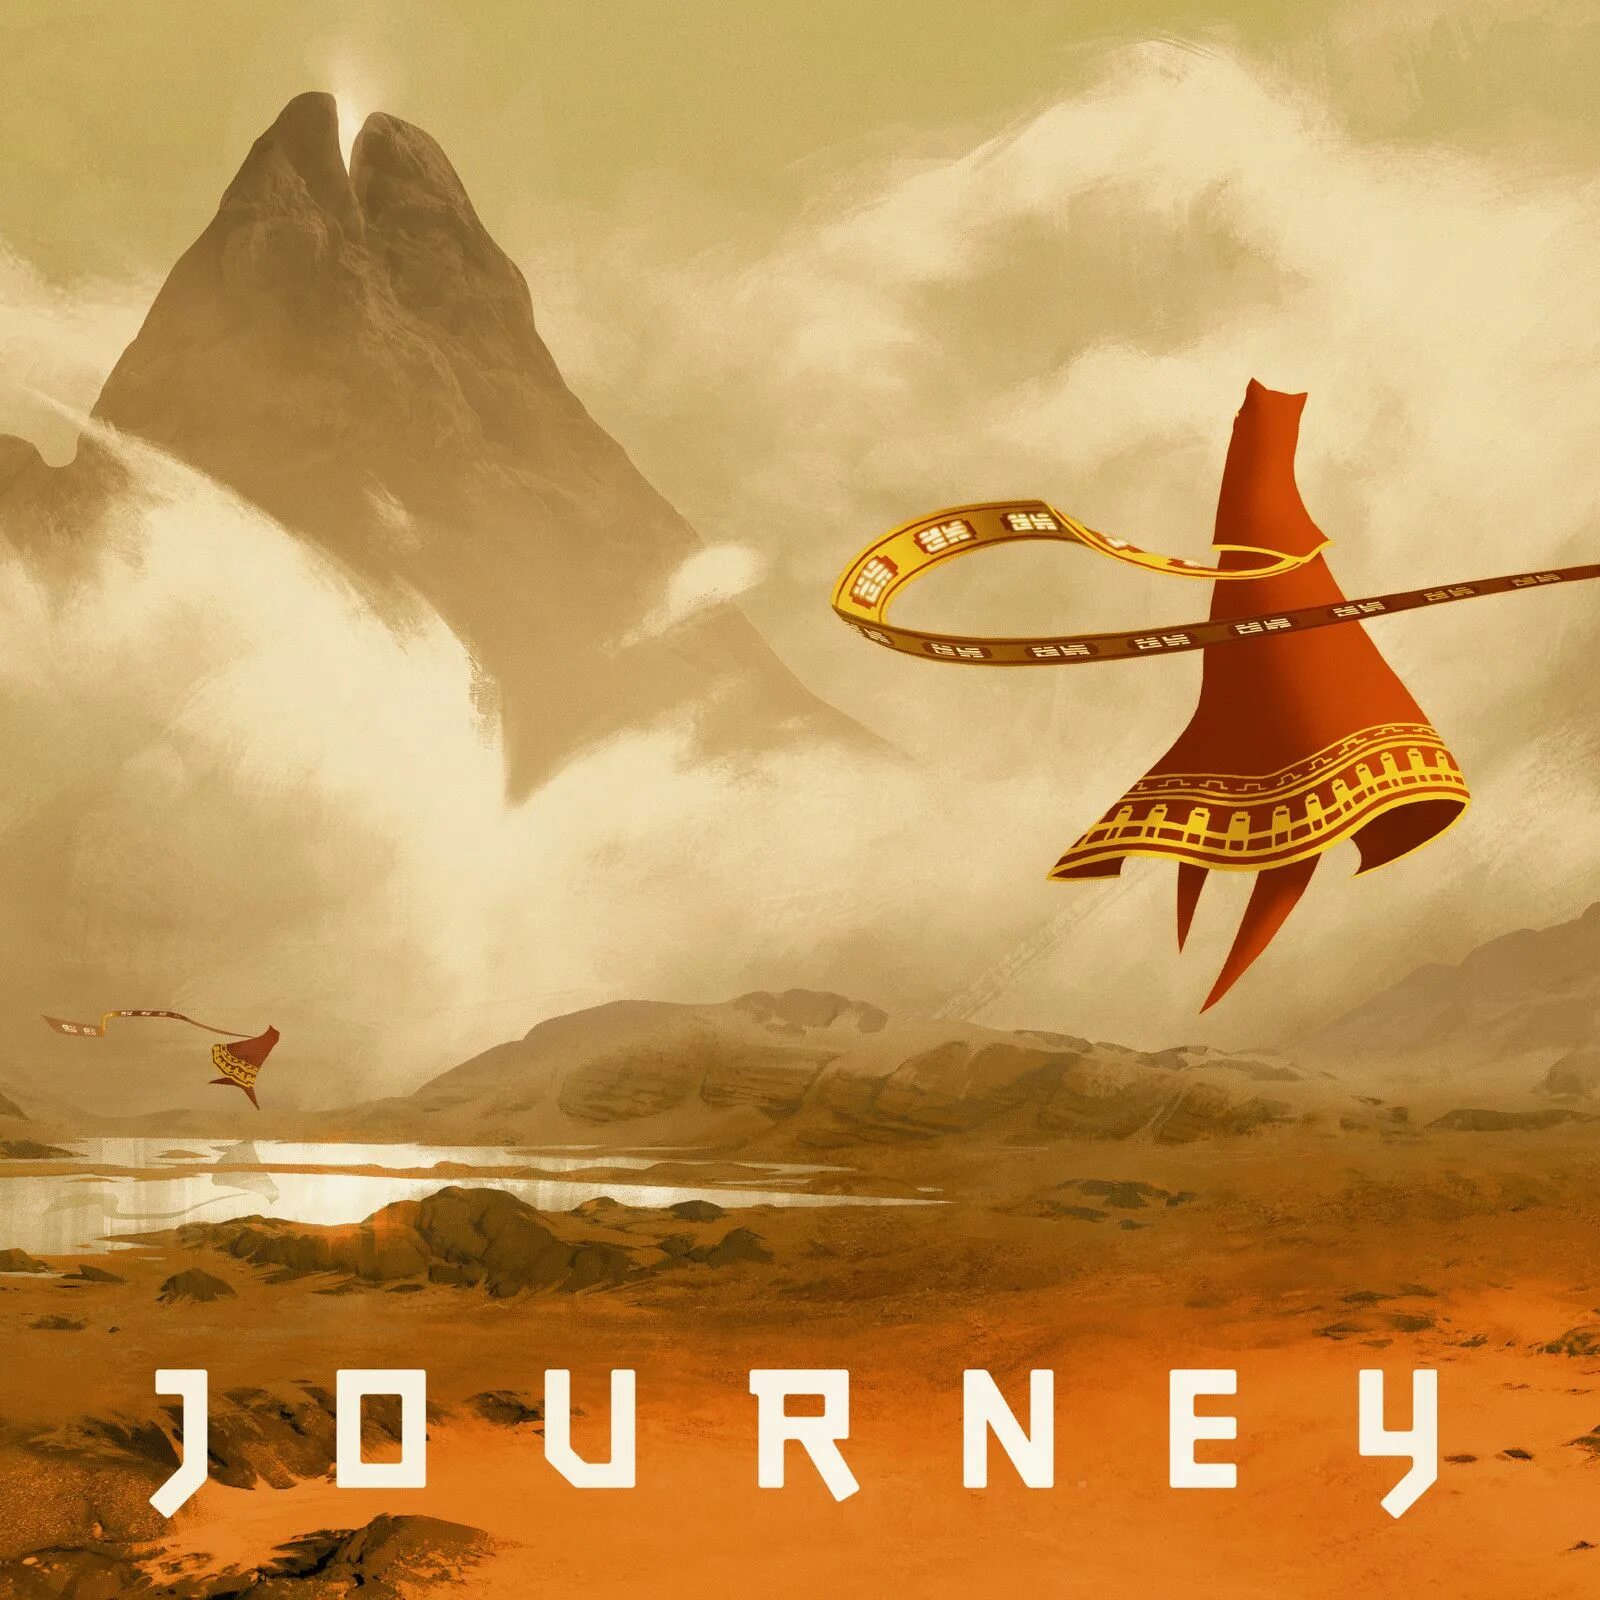 Journey name. Journey (игра, 2012). Journey thatgamecompany. Путешествие игра Journey. Джорни путешествие игра.